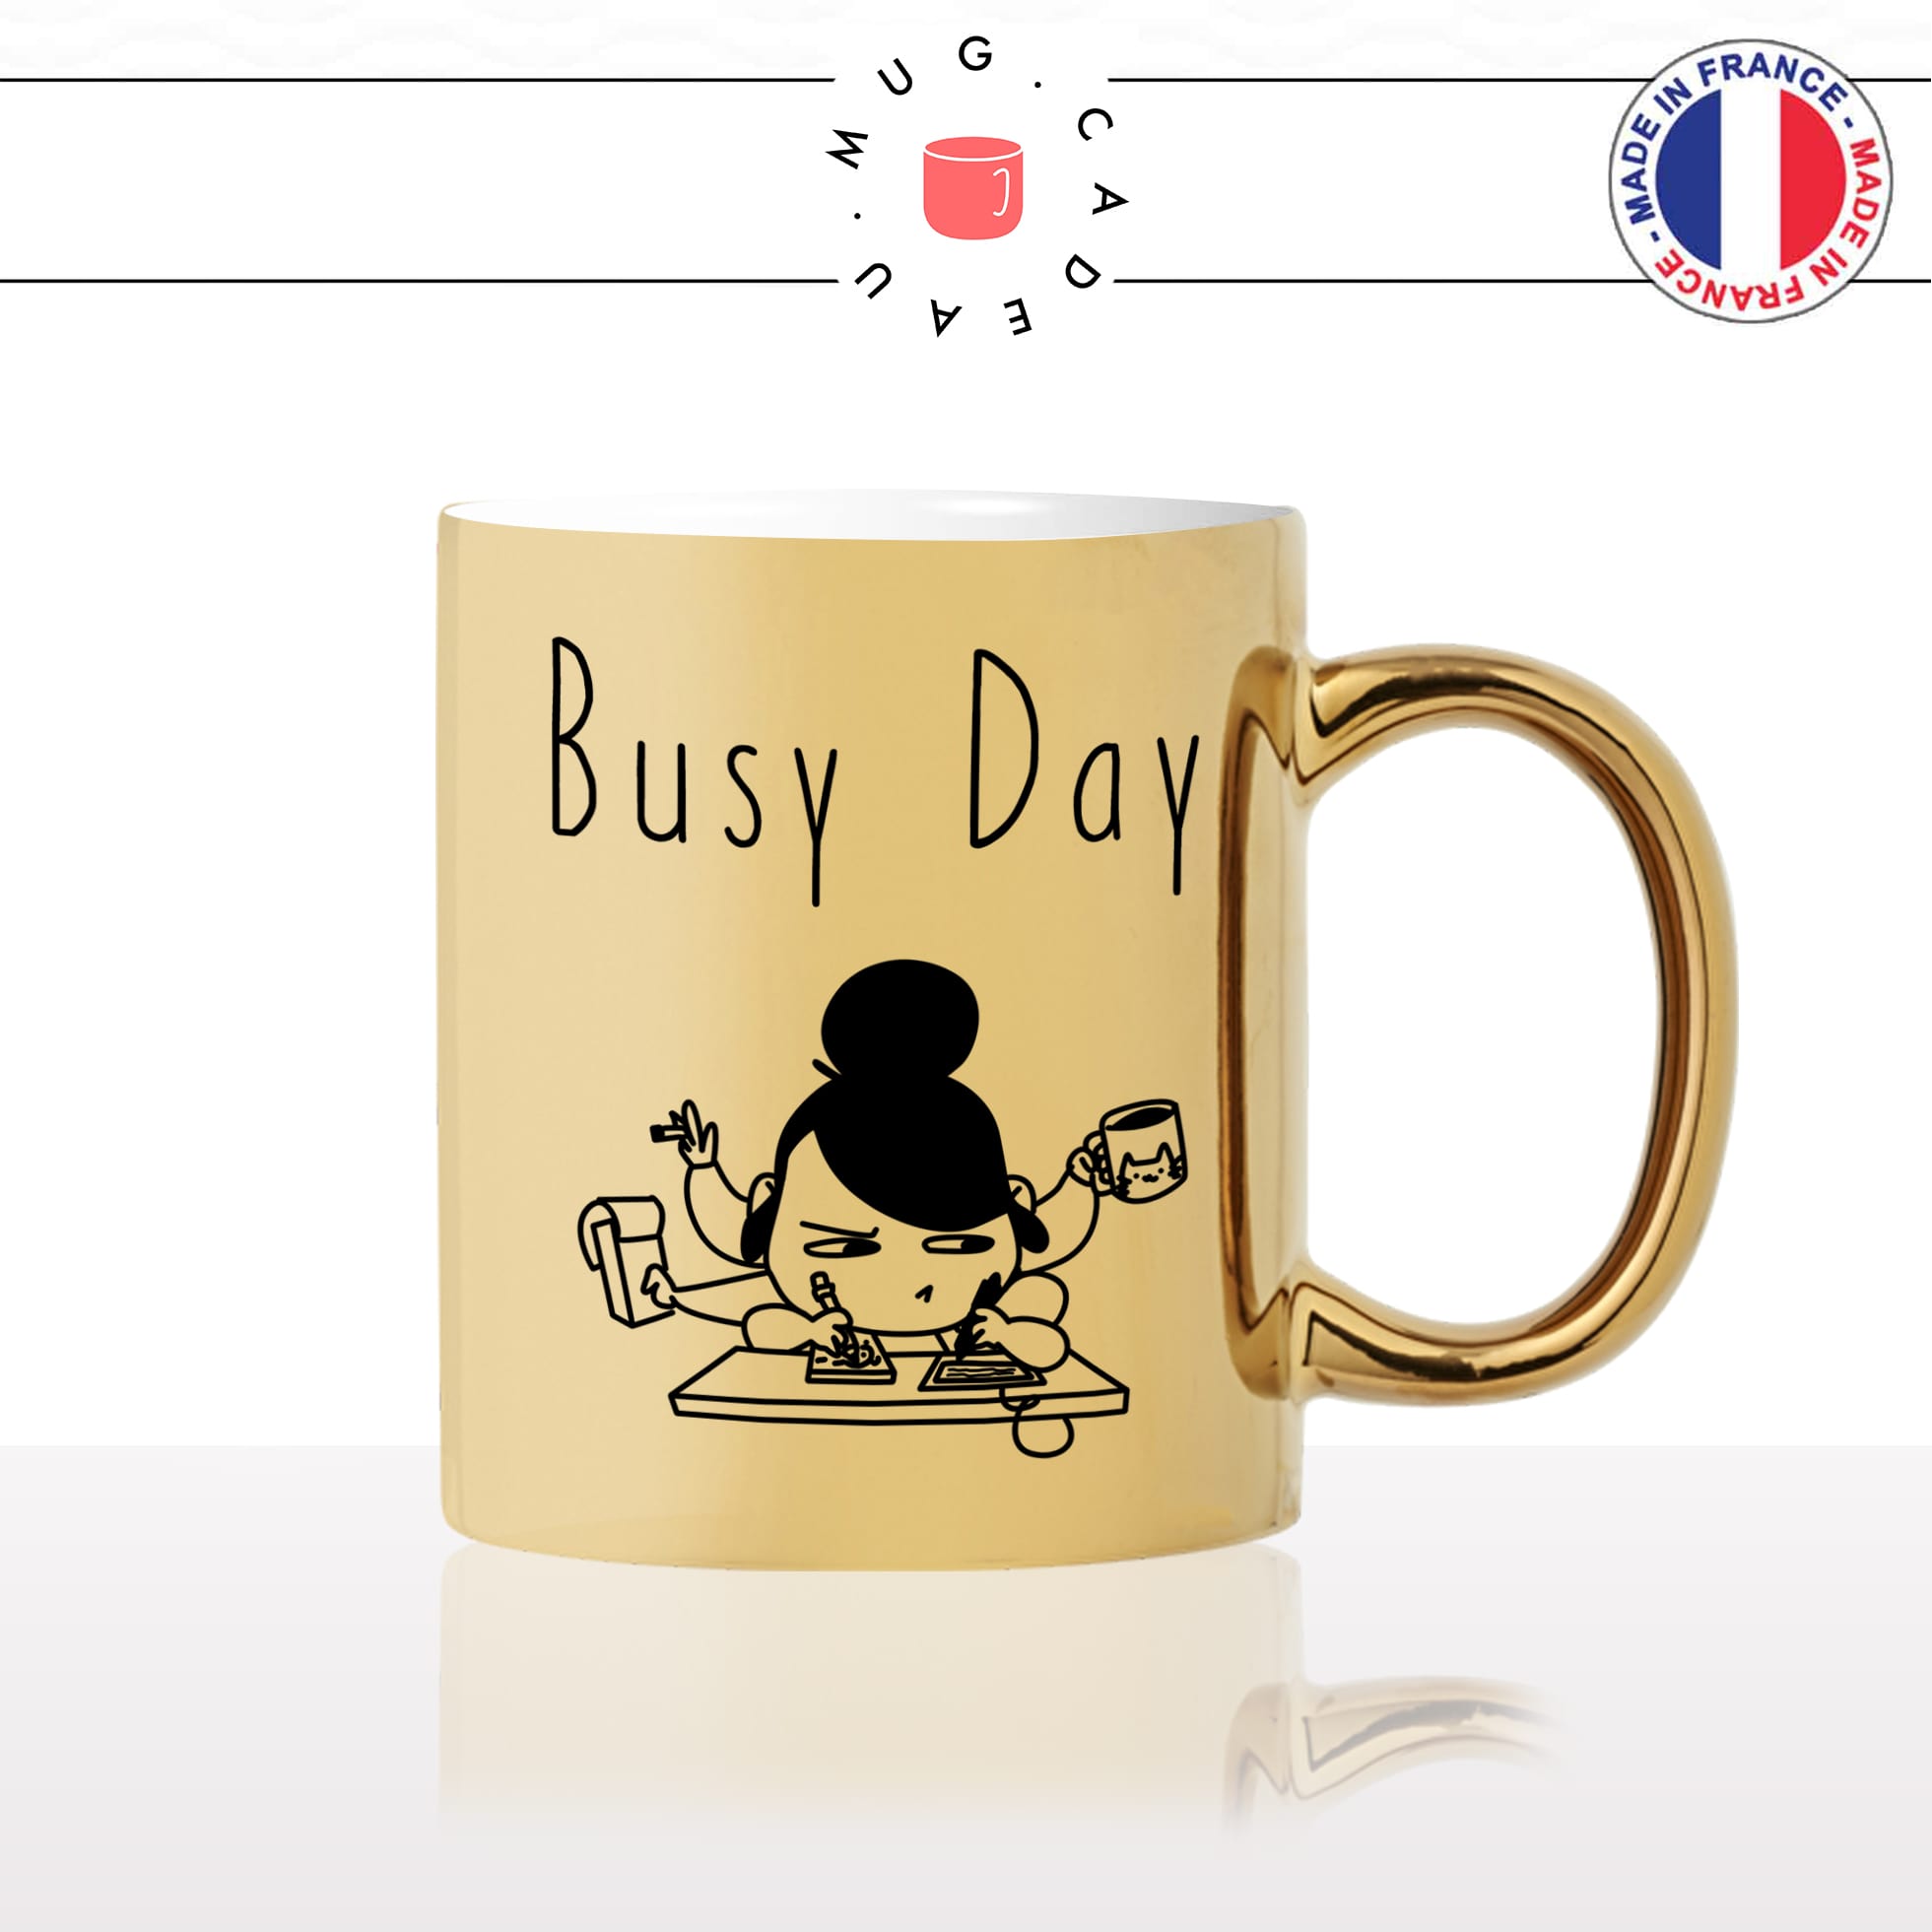 mug-tasse-or-gold-doré-busy-day-secretaire-secretaria-femme-travail-boulot-offrir-cabinet-métier-personnalisé-fun-idée-cadeau-café-thé2-min